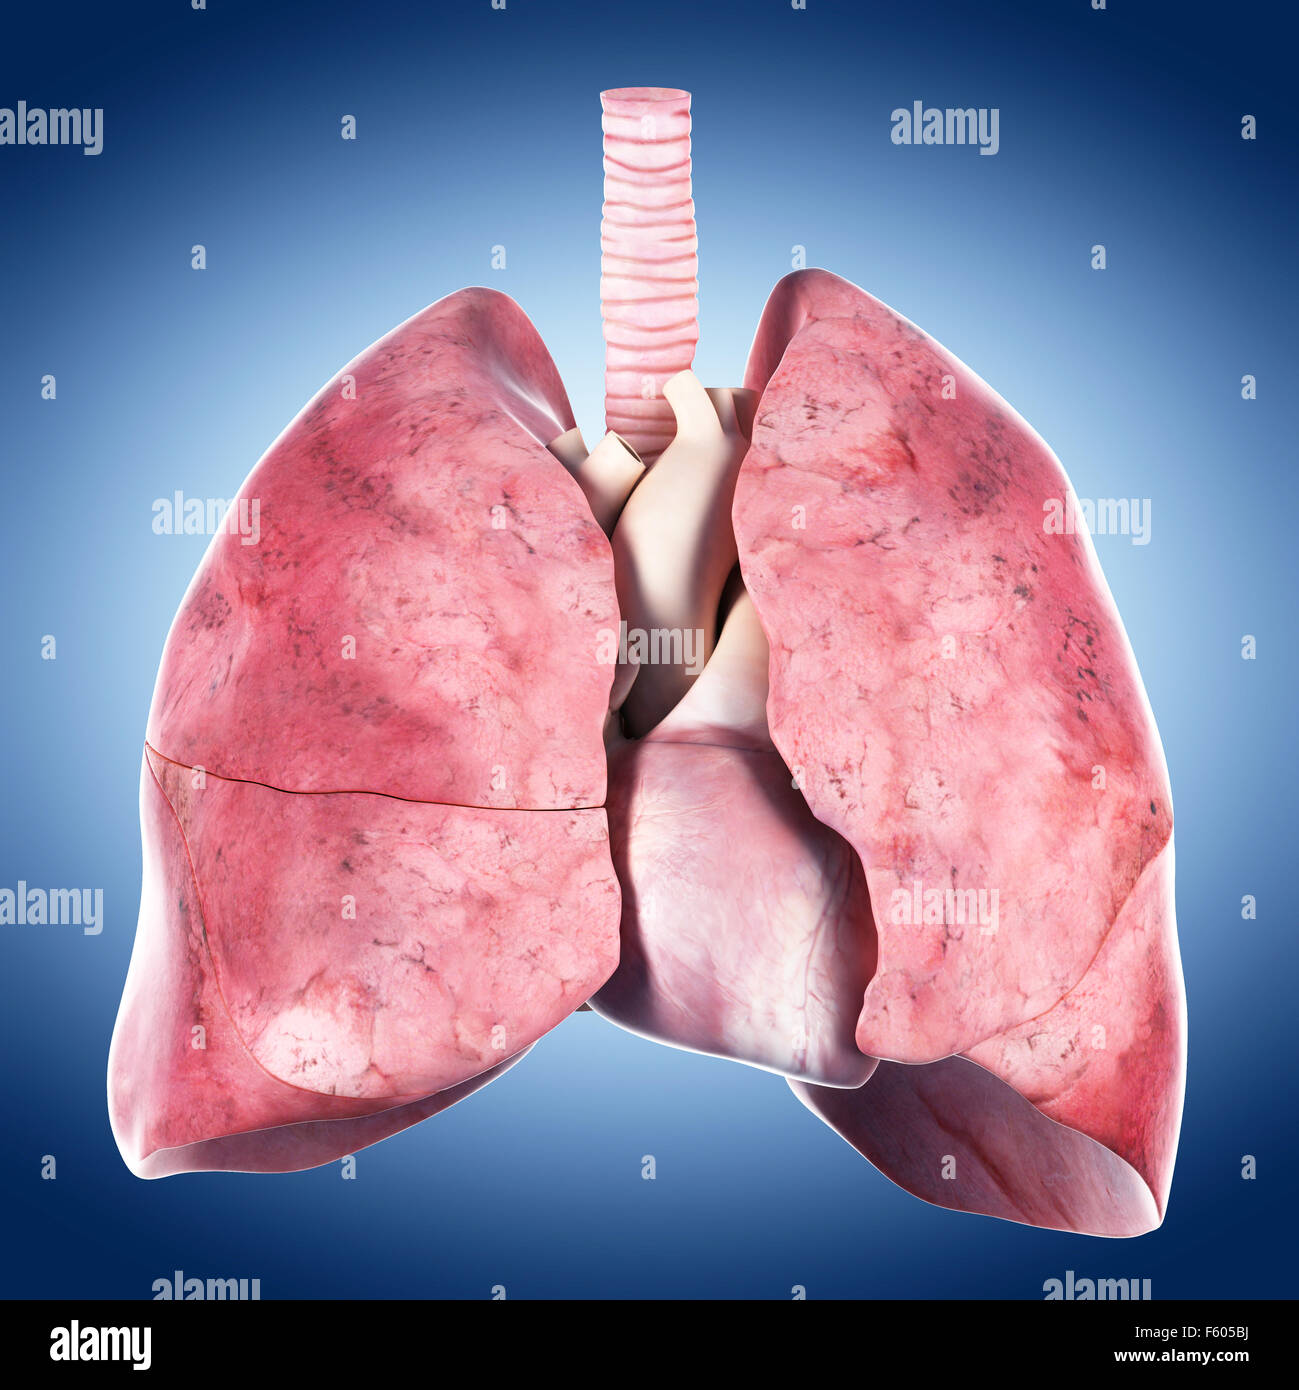 Dal punto di vista medico illustrazione accurata del cuore e del polmone Foto Stock